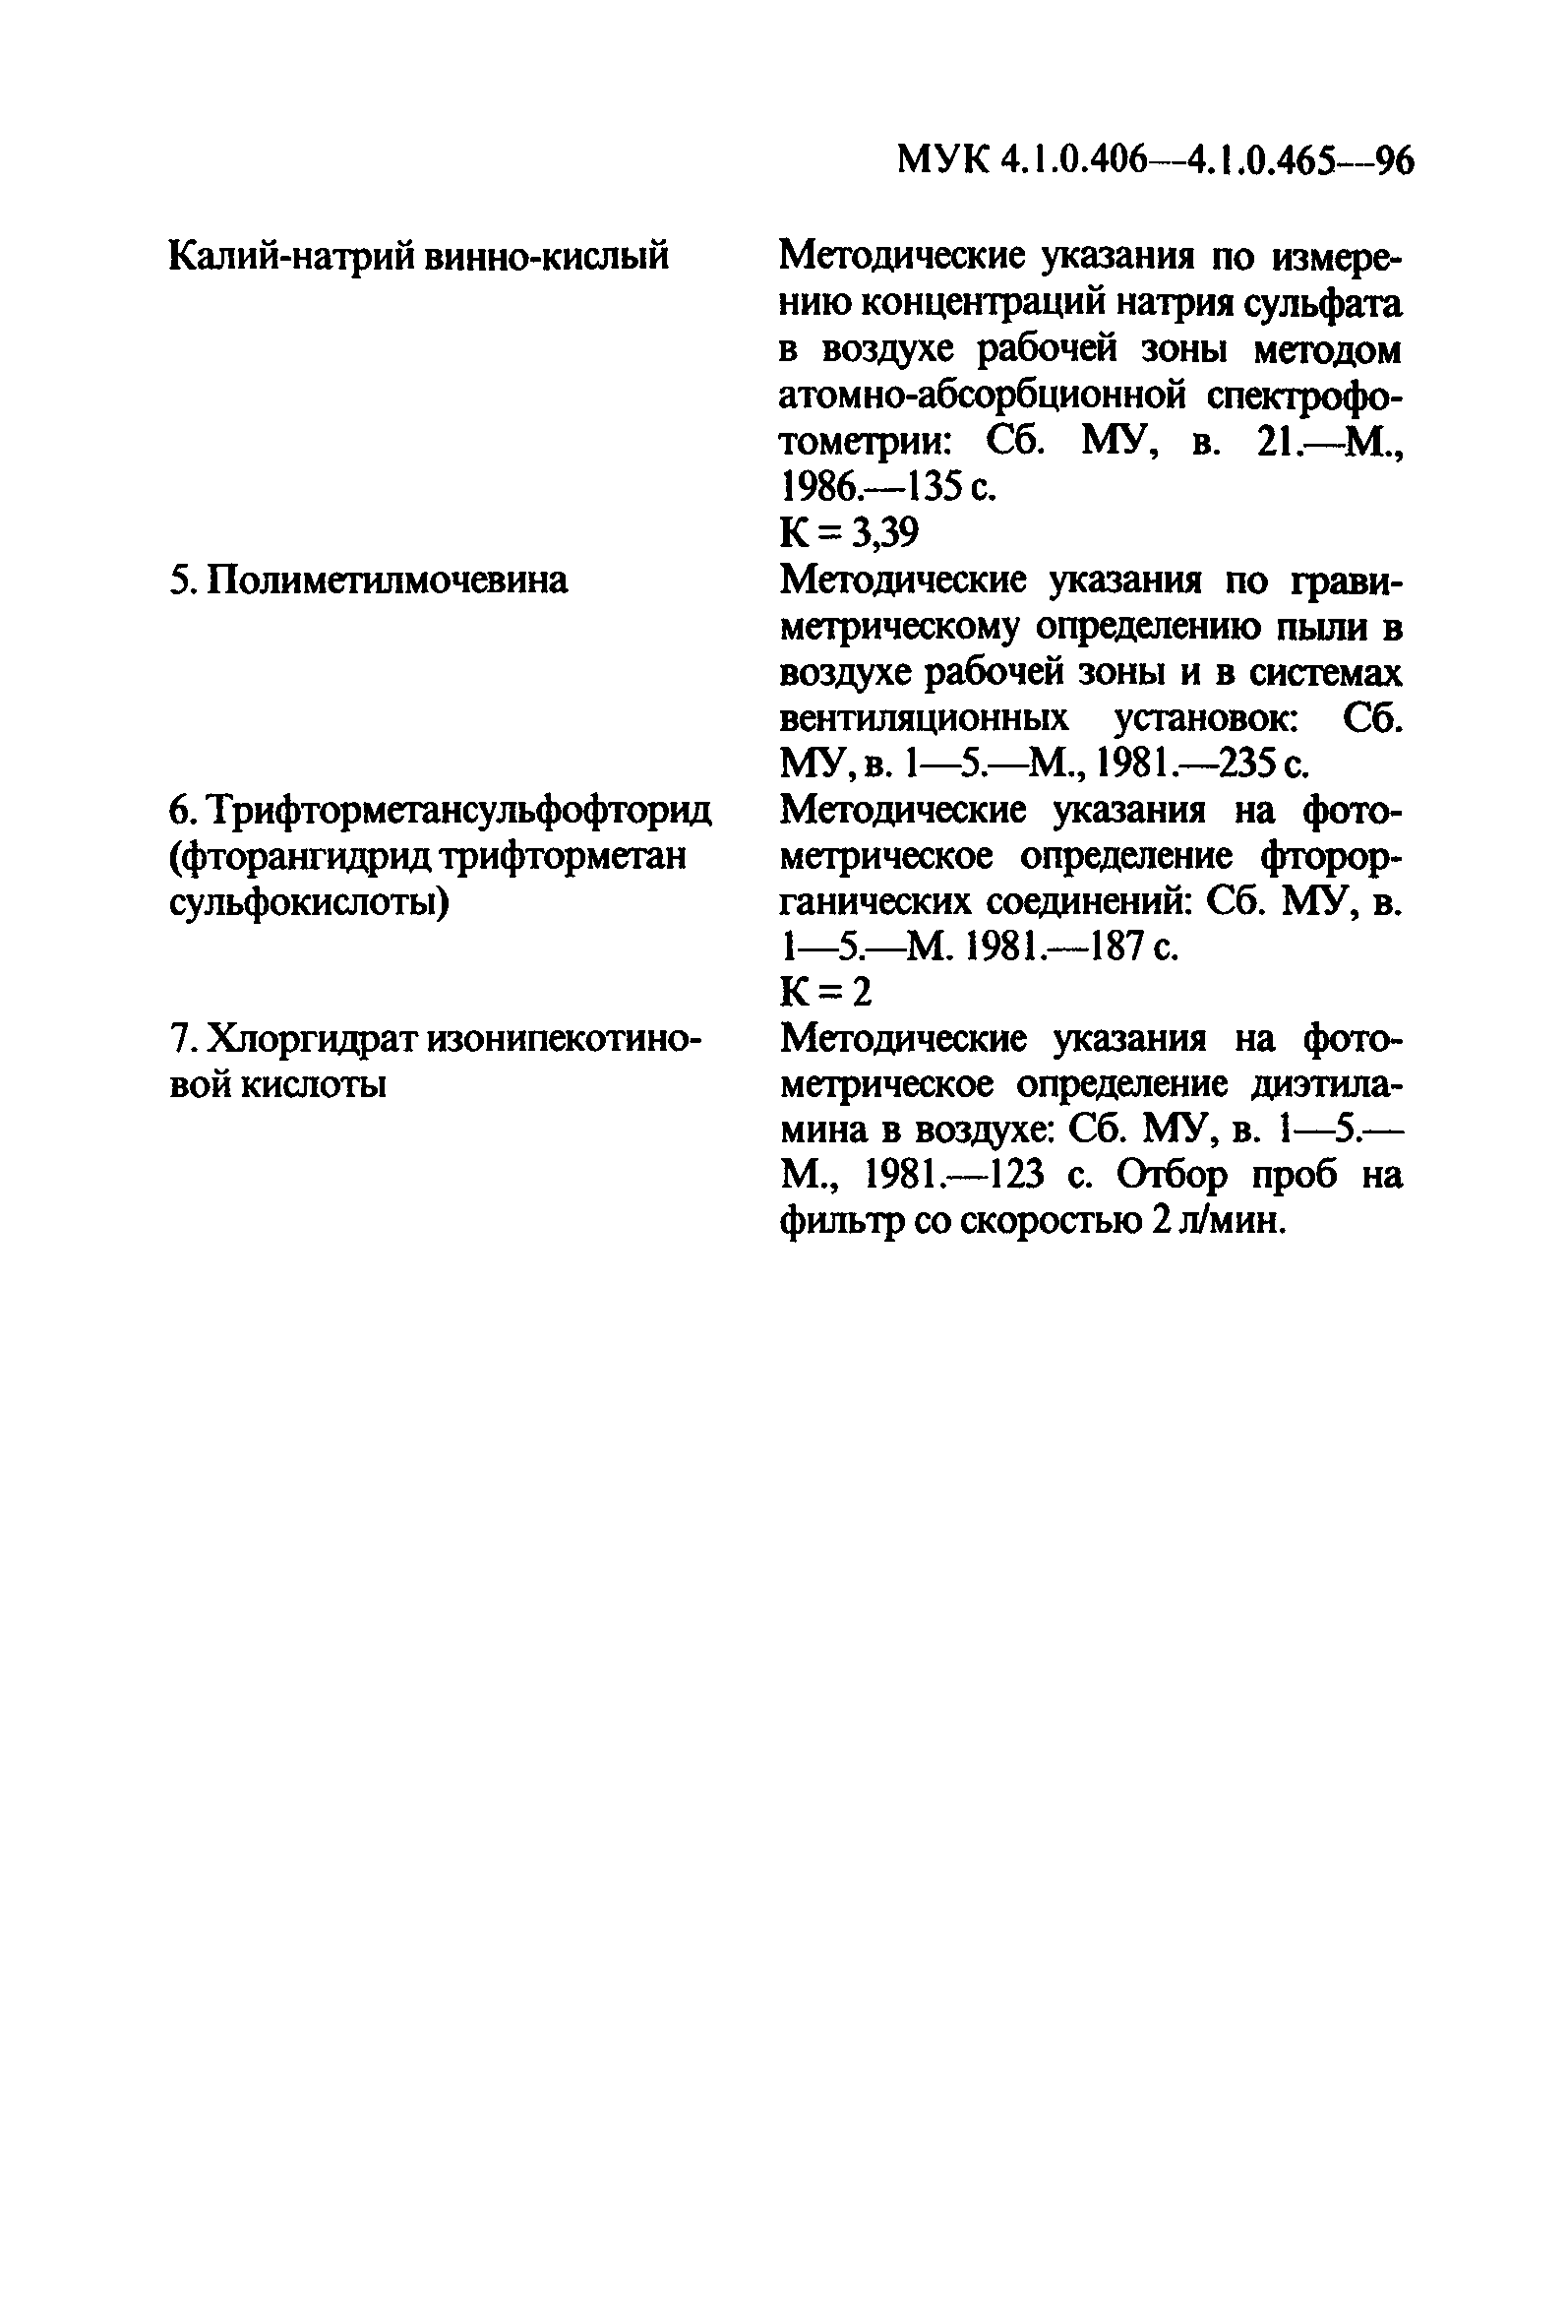 МУК 4.1.0.454-96